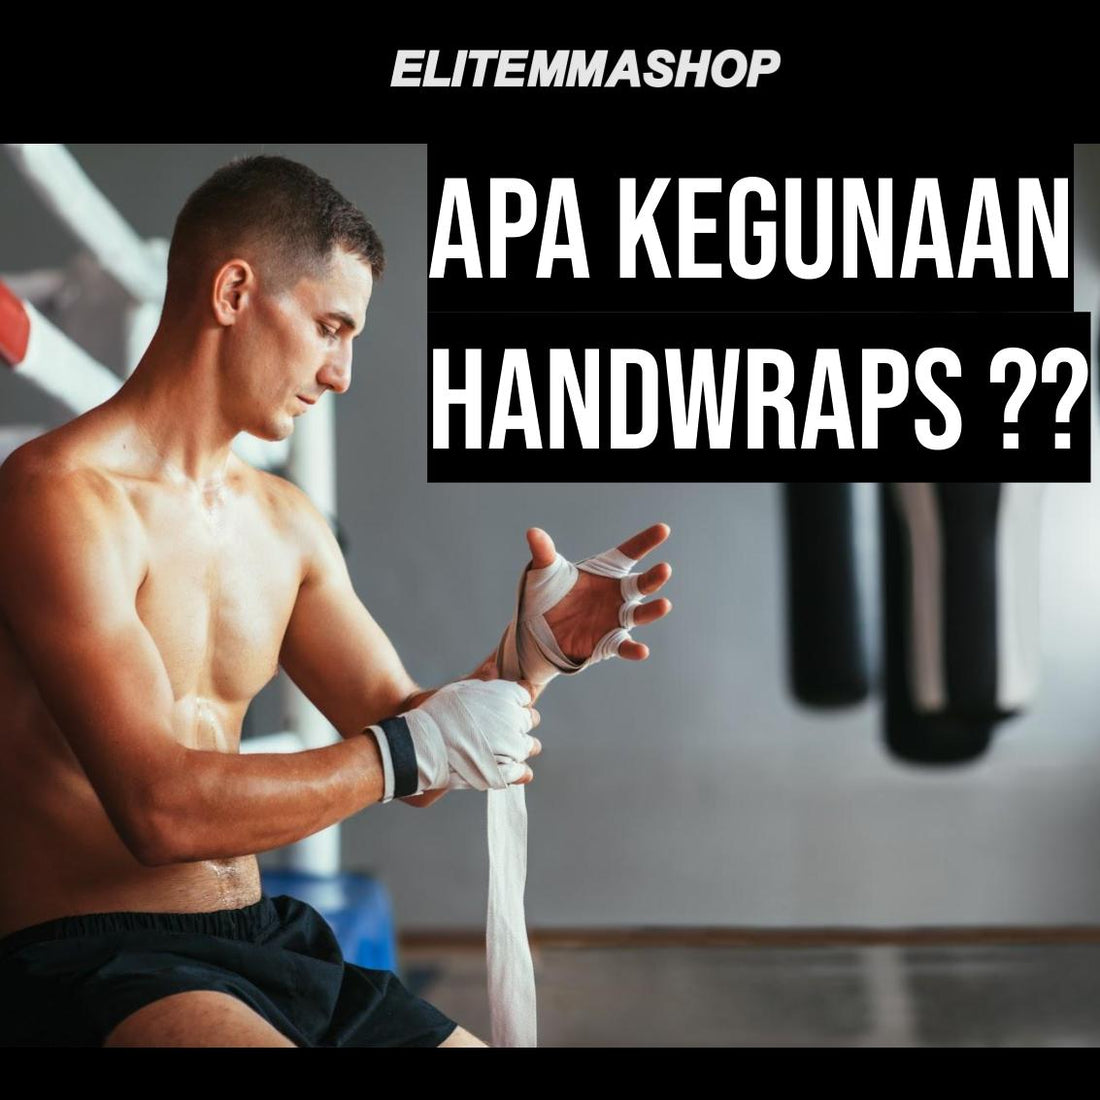 Kegunaan handwrap untuk latihan muay thai dan tinju